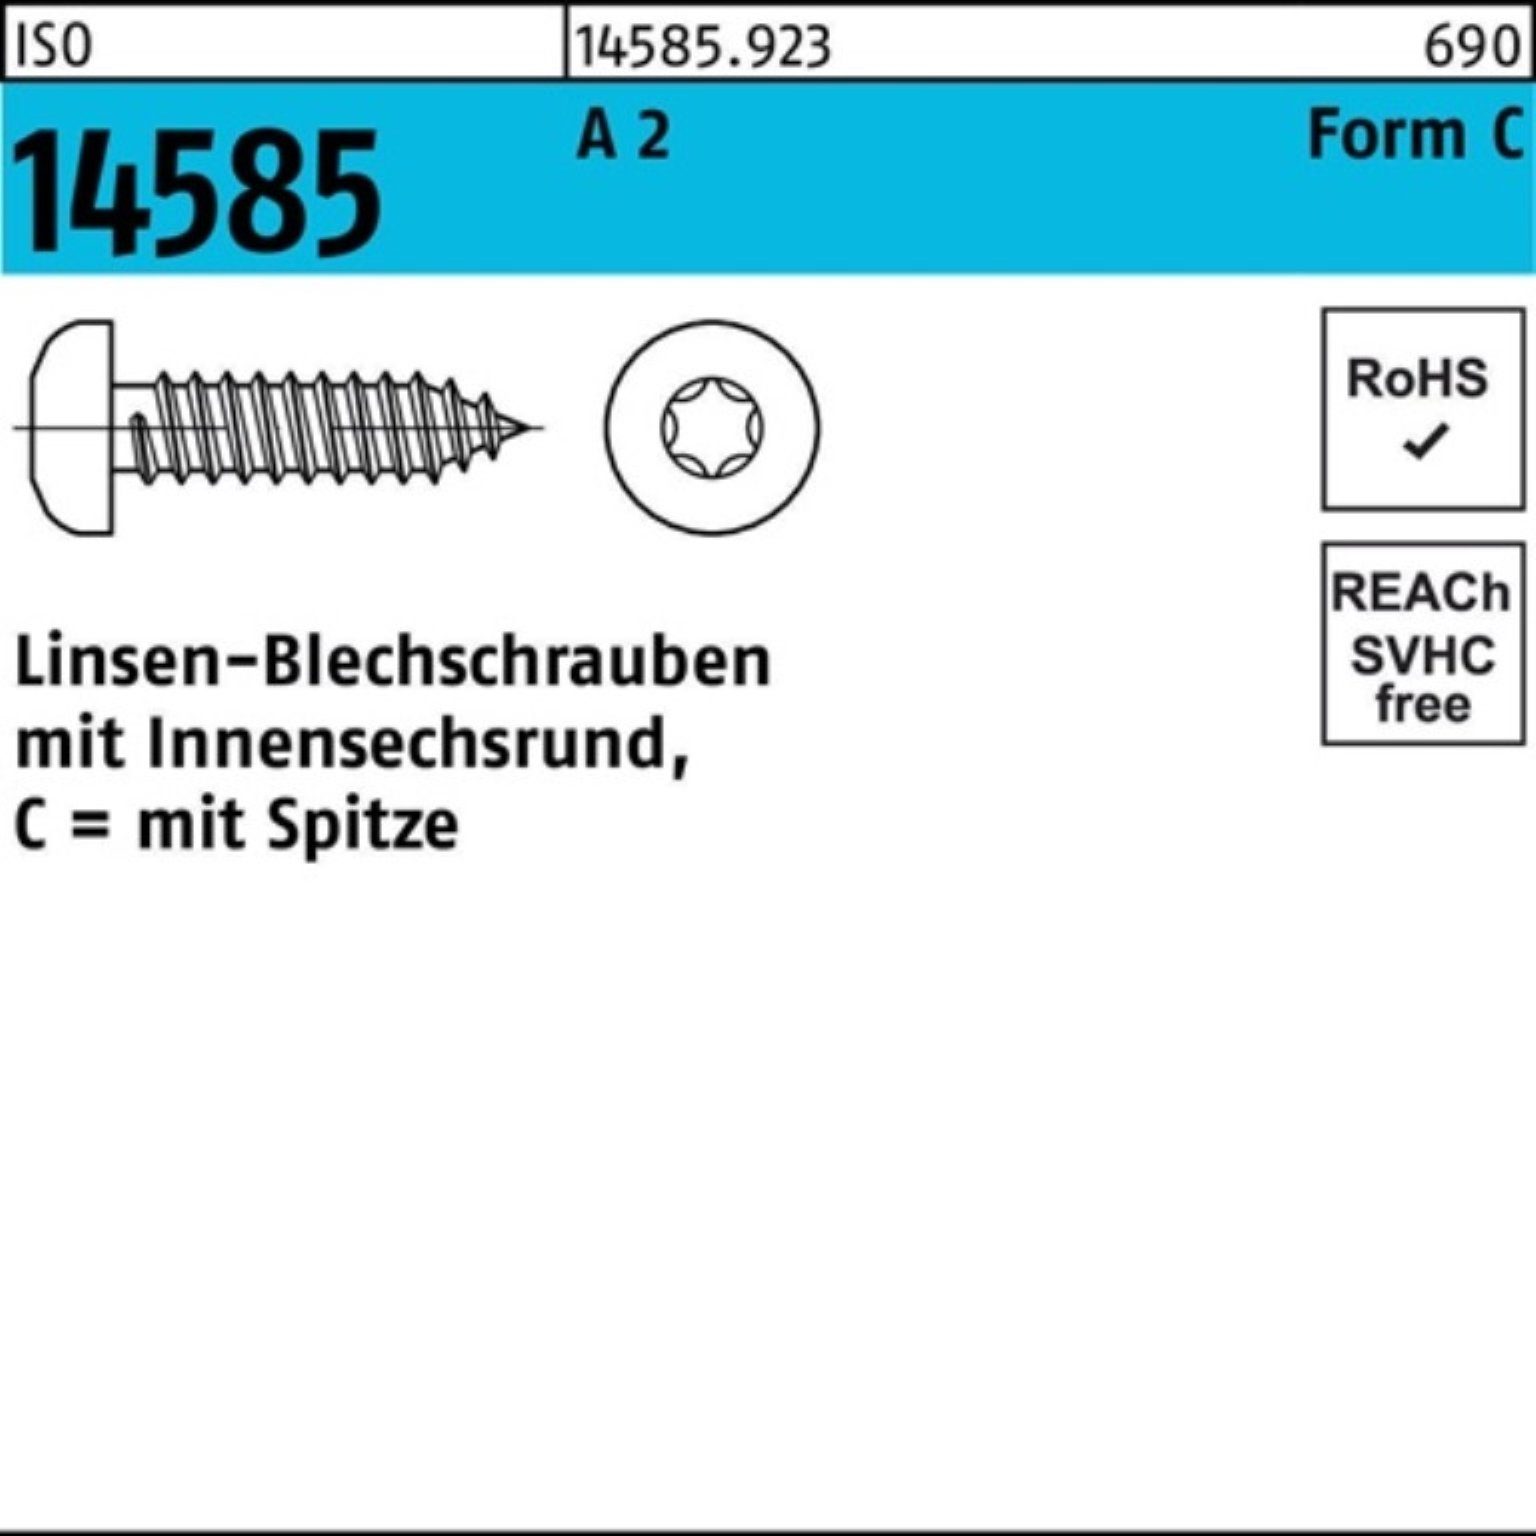 Reyher Blechschraube 100er Pack S A Linsenblechschraube ISO T25 14585 ISR 100 4,8x -C 100 2